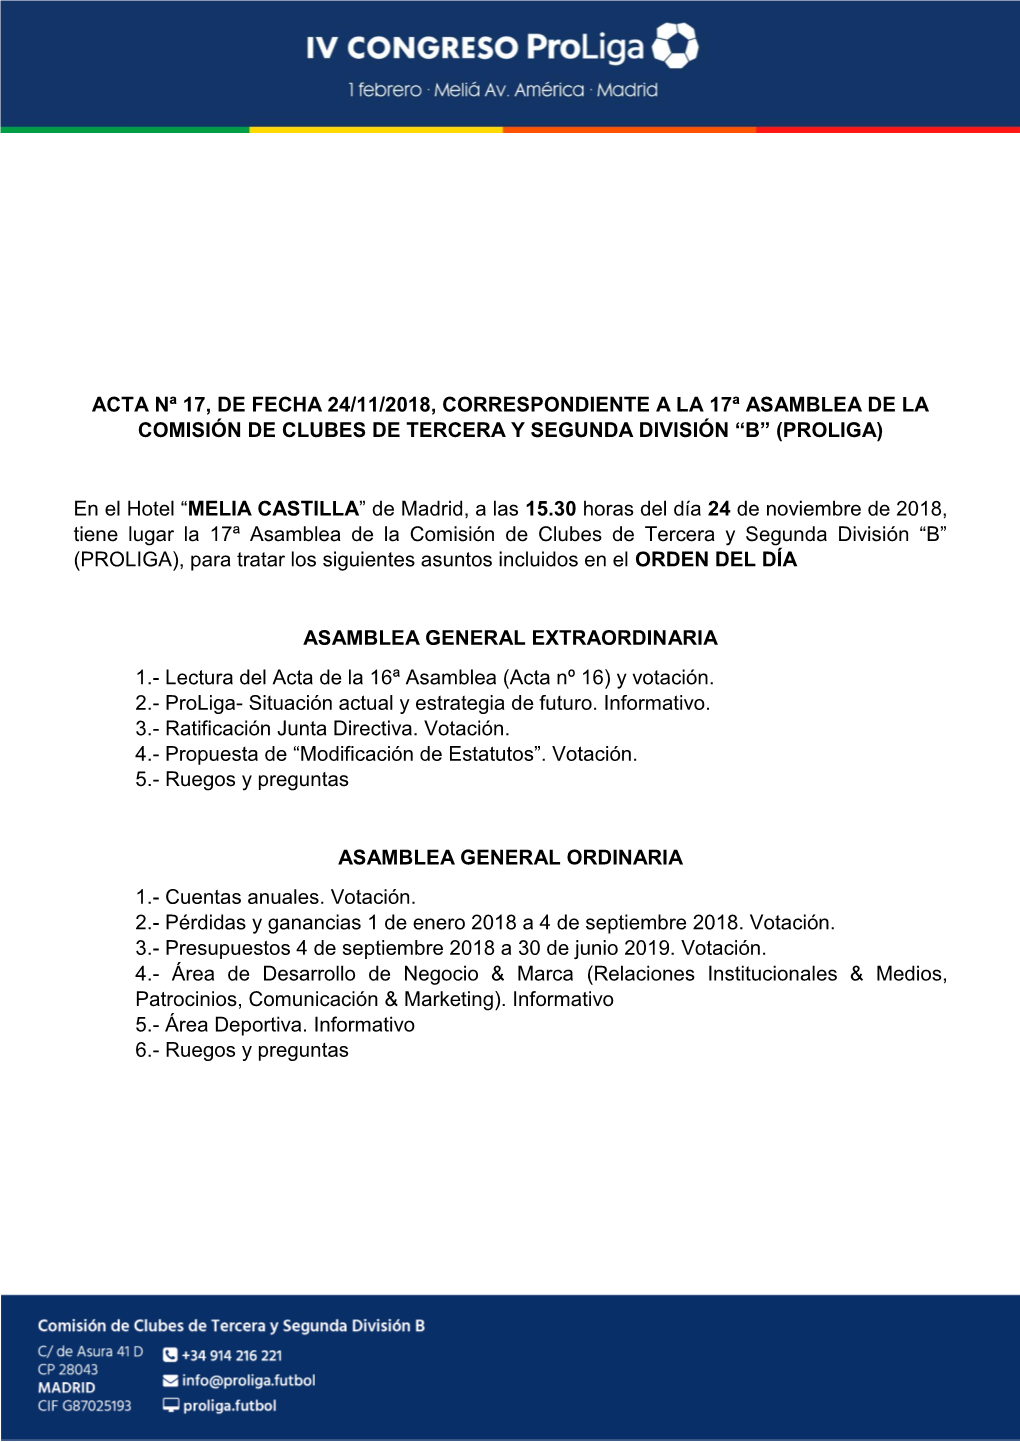 Acta Nª 17, De Fecha 24/11/2018, Correspondiente a La 17ª Asamblea De La Comisión De Clubes De Tercera Y Segunda División “B” (Proliga)